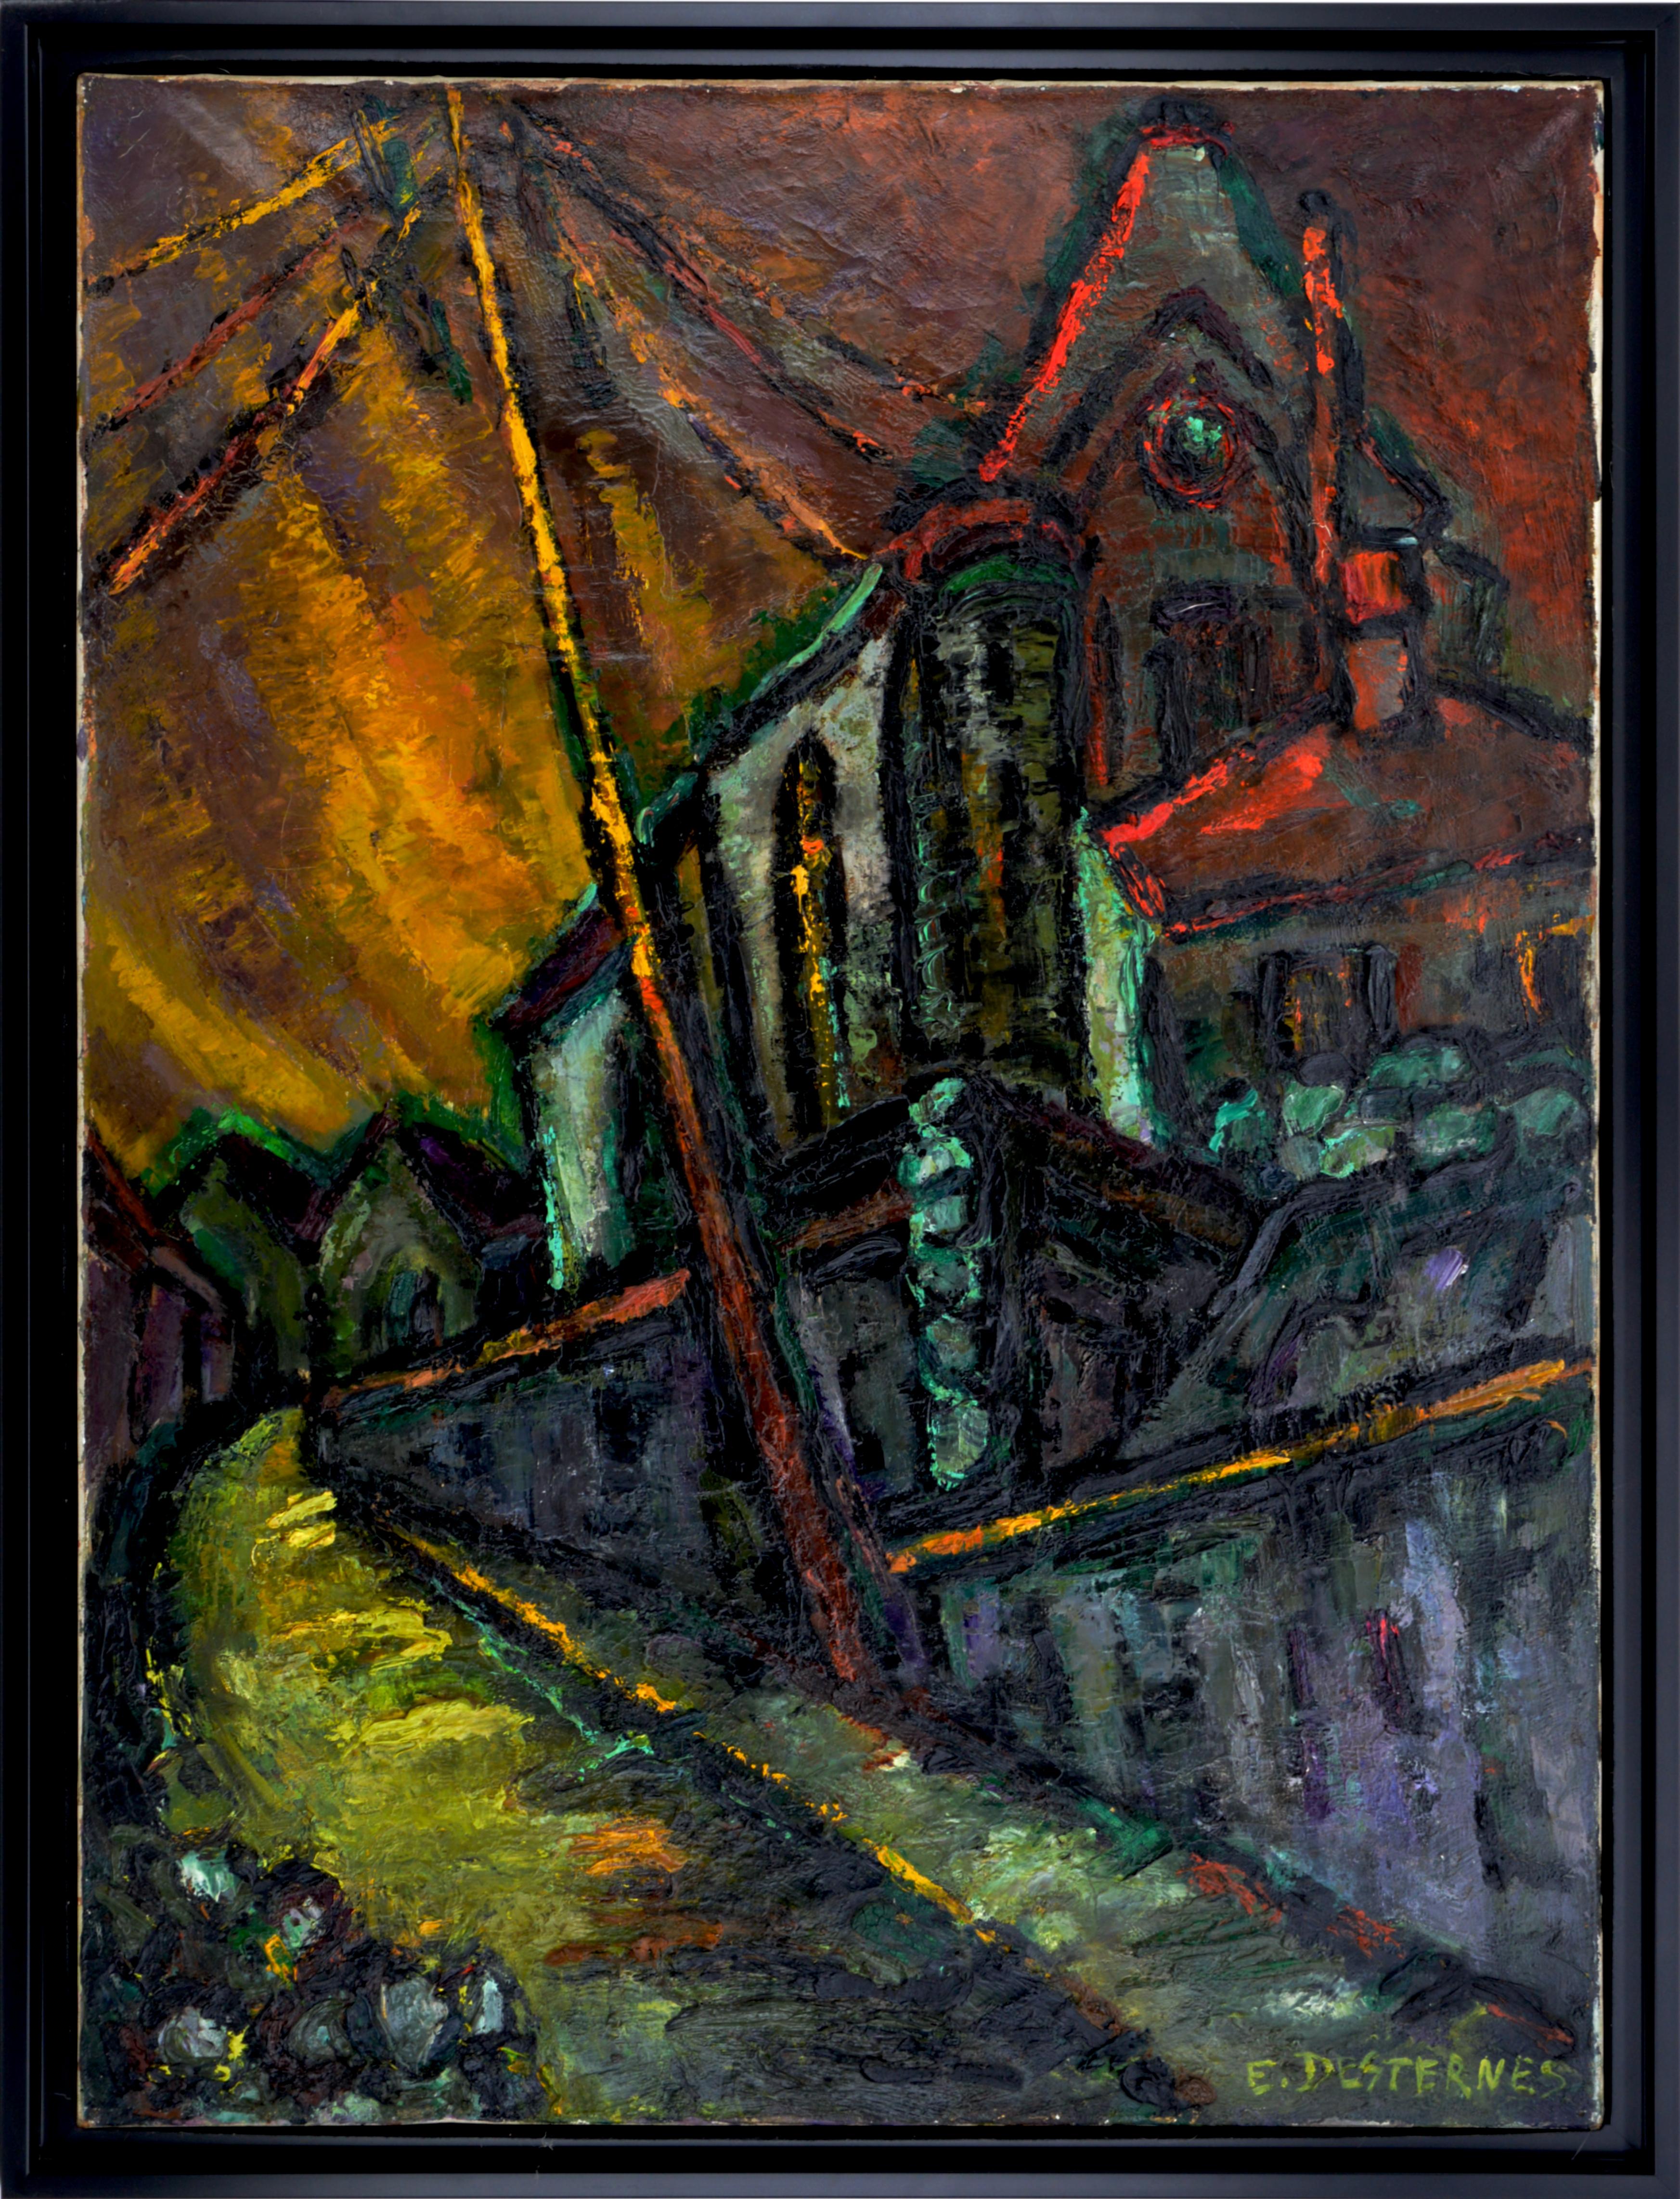 Huile sur toile d'Edith Desternes (1901-2000), France, années 1920. L'église Notre-Dame de l'Assomption à Auvers-sur-Oise. Cette église a été peinte en 1890 par Vincent van Gogh. Au premier abord, on est frappé par la force de ce travail. Puis, à